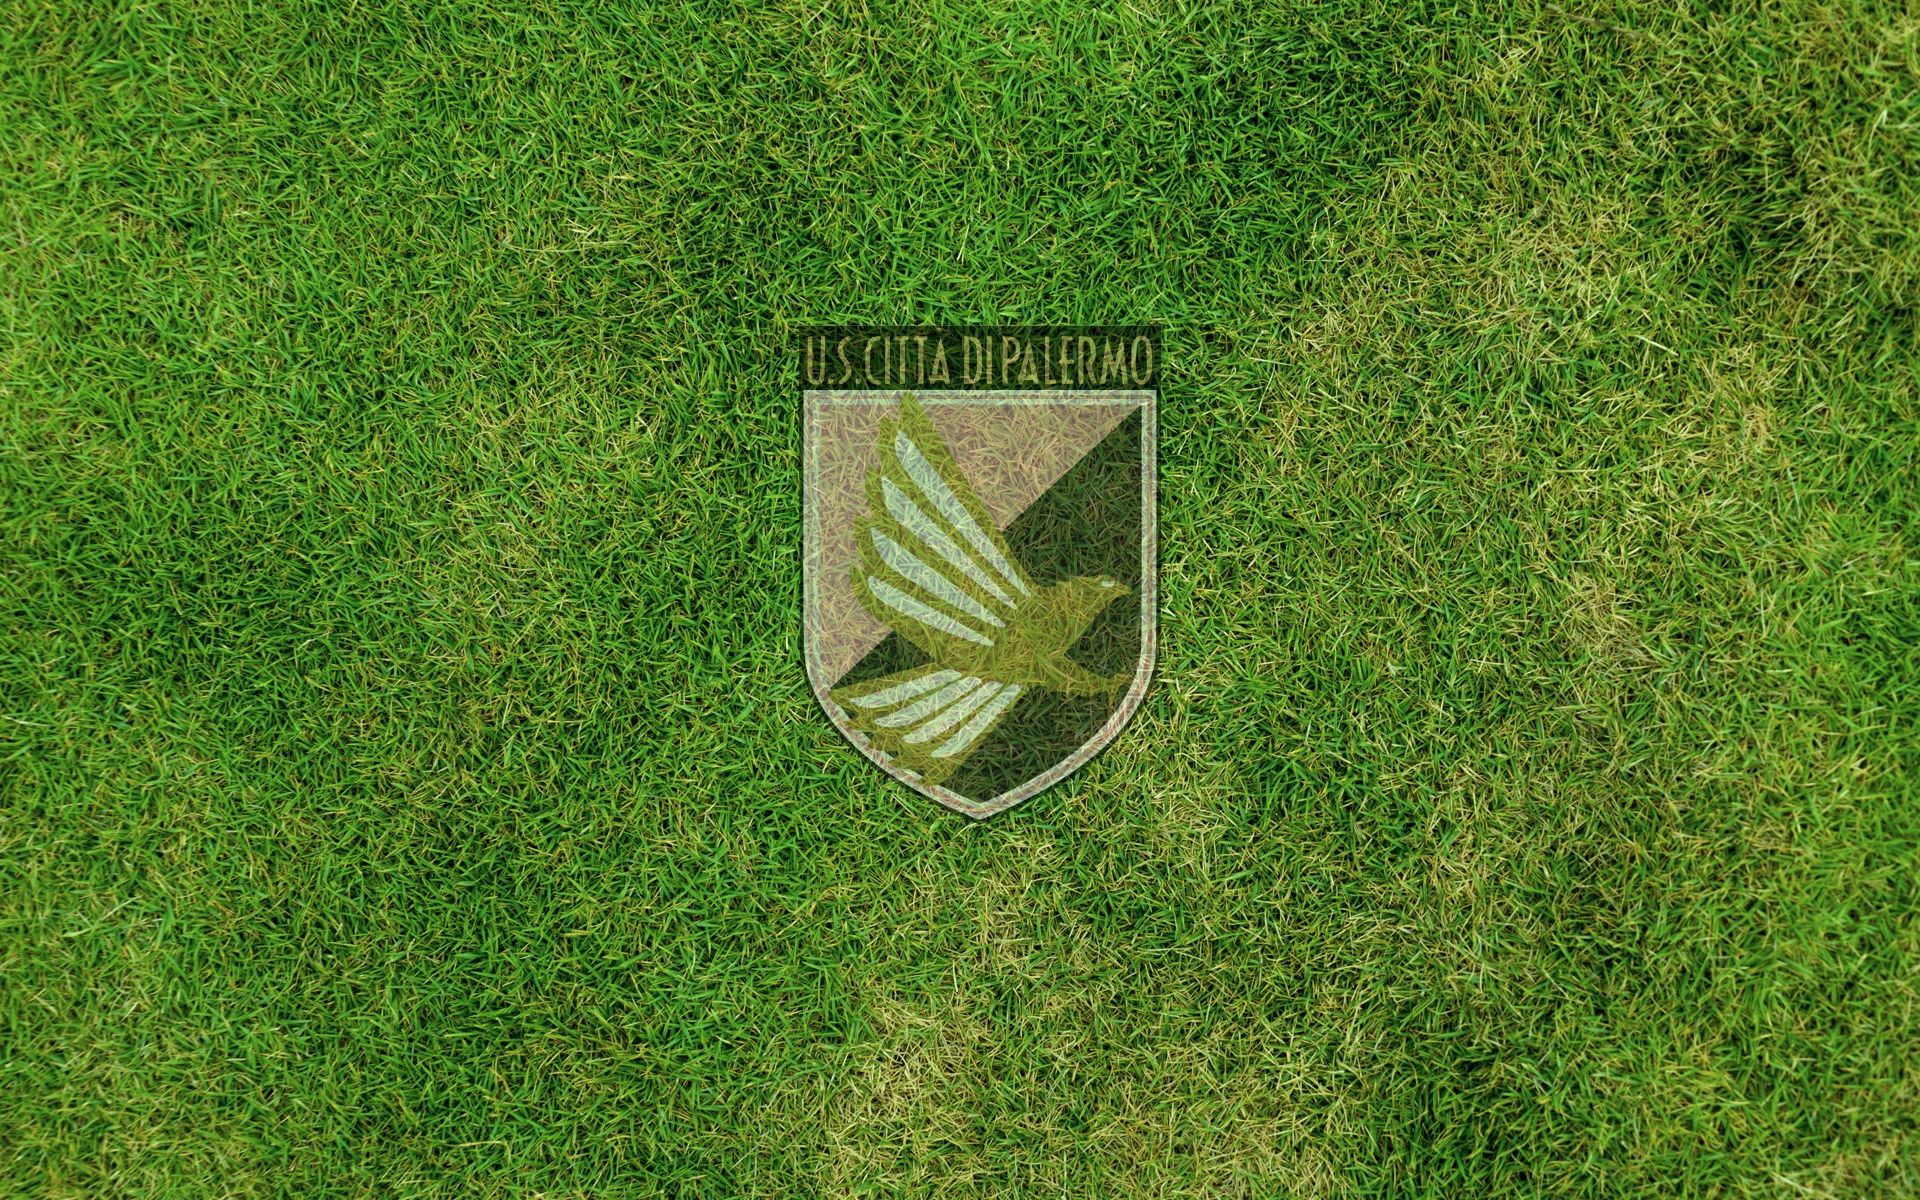 Palermo calcio club desktop wallpaper with logo